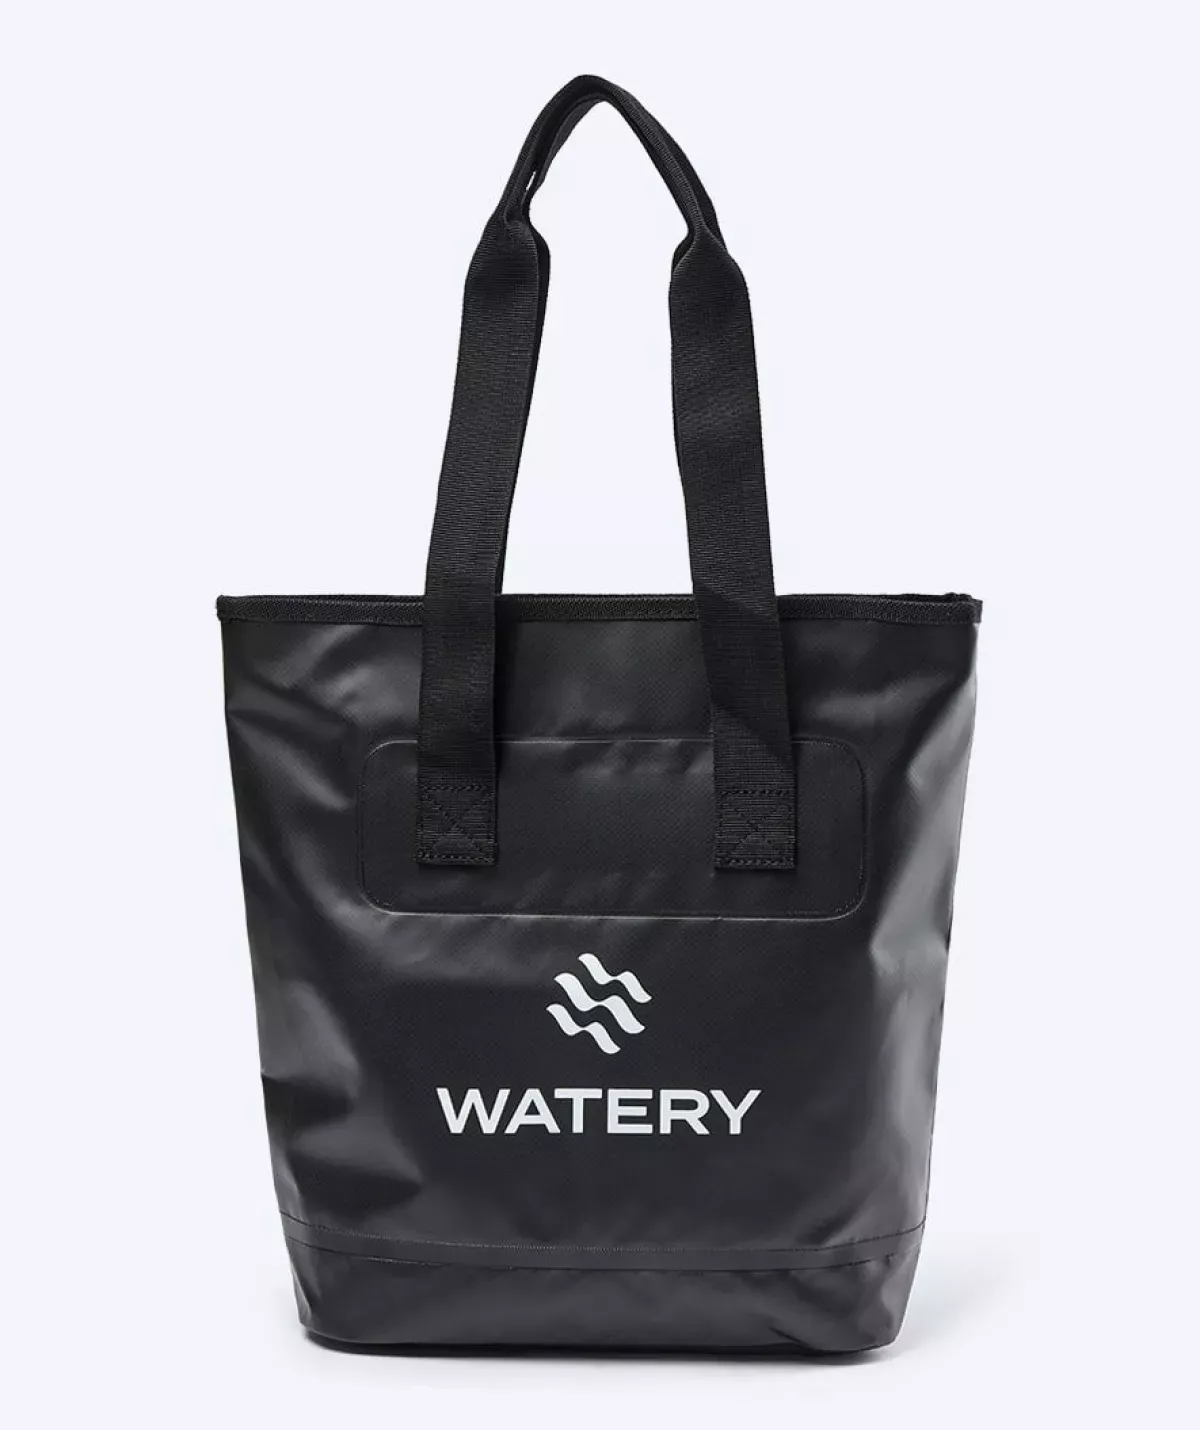 #2 - Watery vandtæt strandtaske - Laiken - Sort